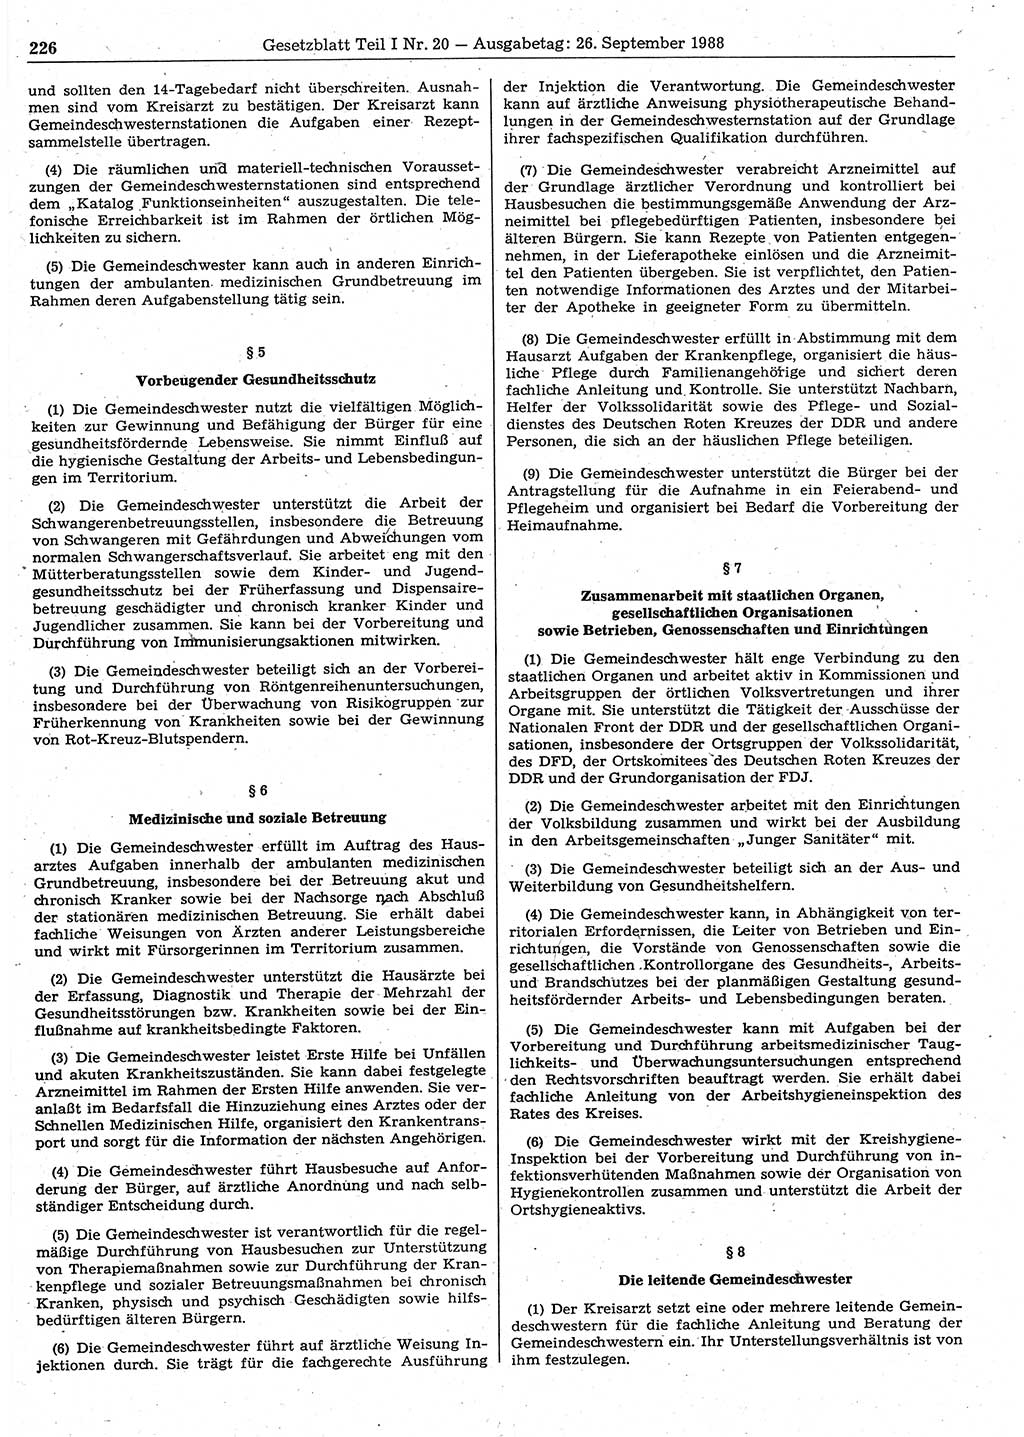 Gesetzblatt (GBl.) der Deutschen Demokratischen Republik (DDR) Teil Ⅰ 1988, Seite 226 (GBl. DDR Ⅰ 1988, S. 226)